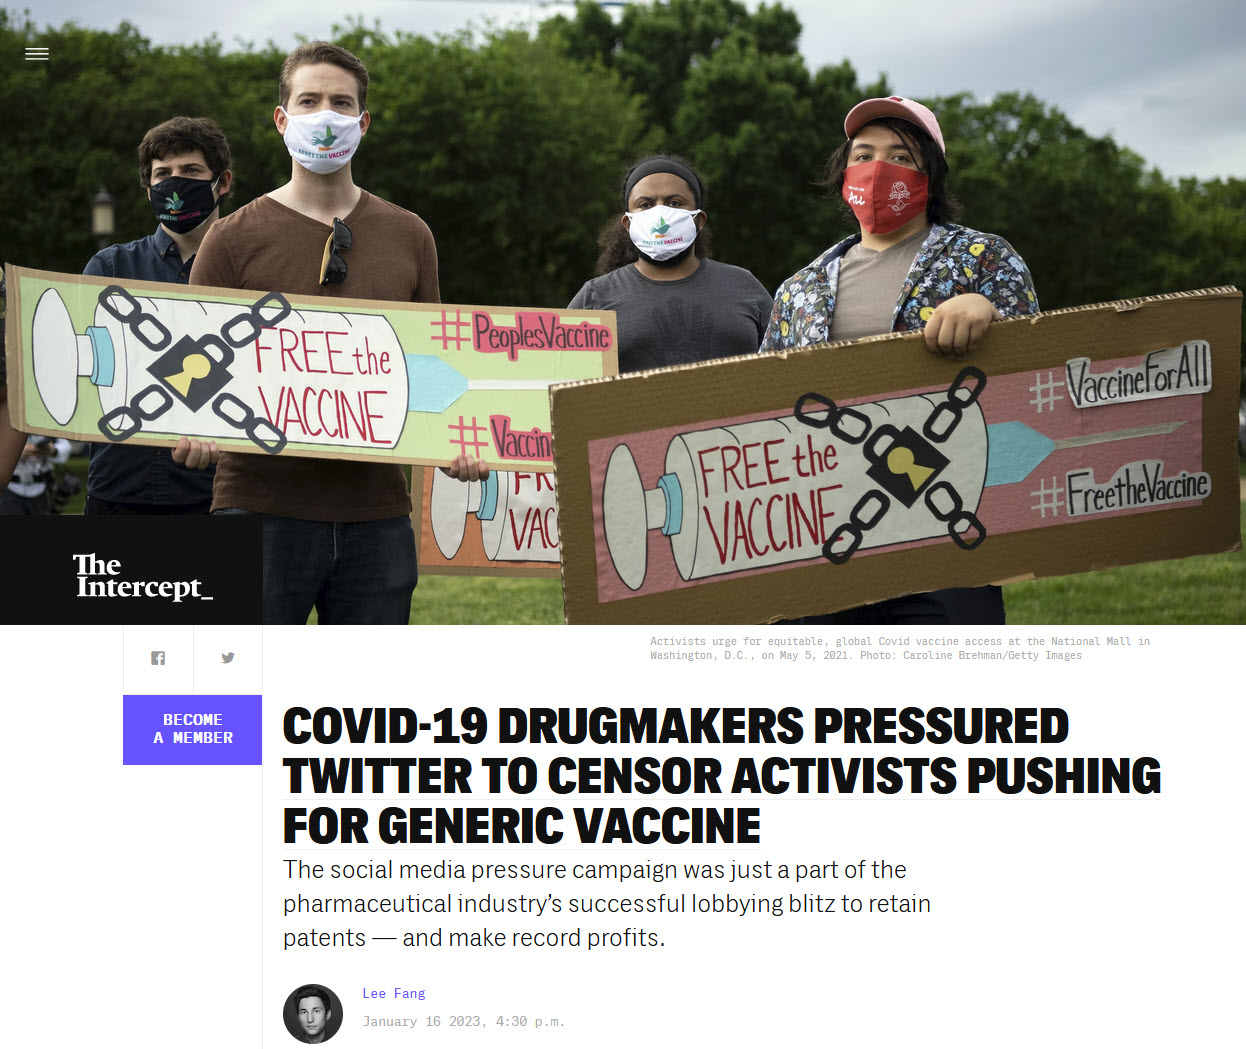 Covid-19 Pharmahersteller drängten Twitter, Aktivisten für generischen Impfstoff zu zensieren